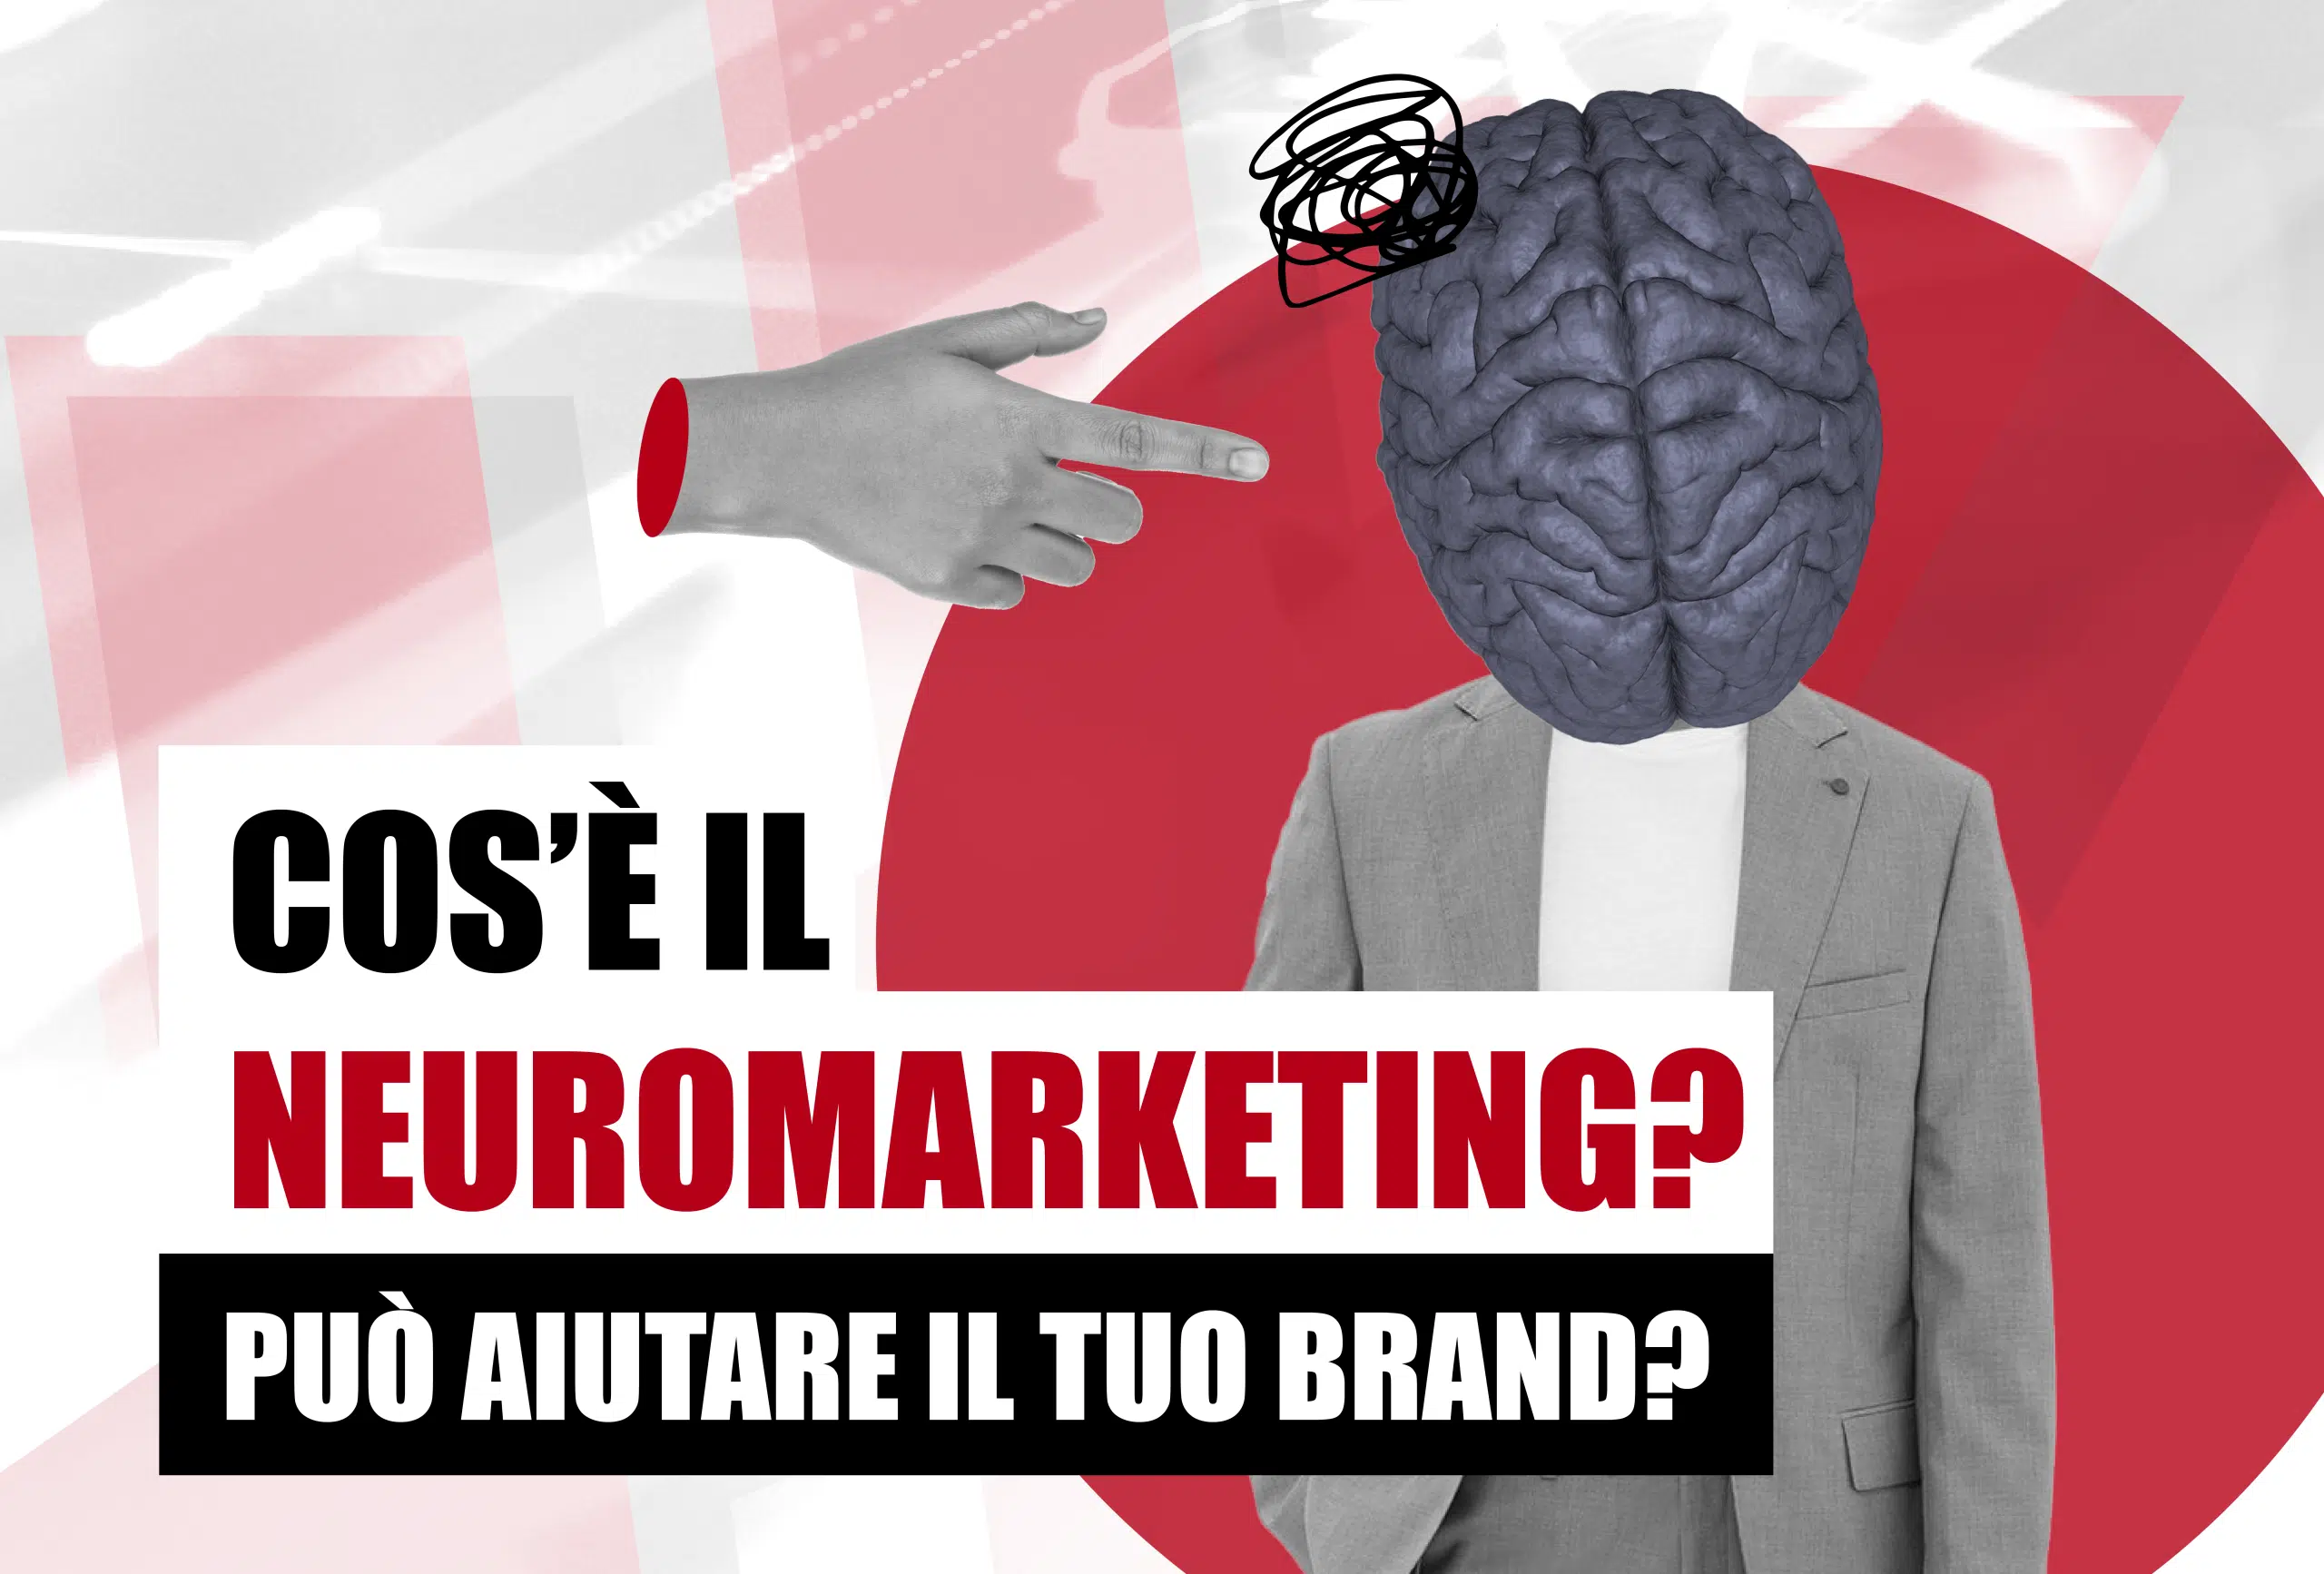 Benvenuti nella nuova frontiera del marketing: scopri come il neuromarketing aiuta a capire cosa spinge i consumatori a scegliere un marchio.